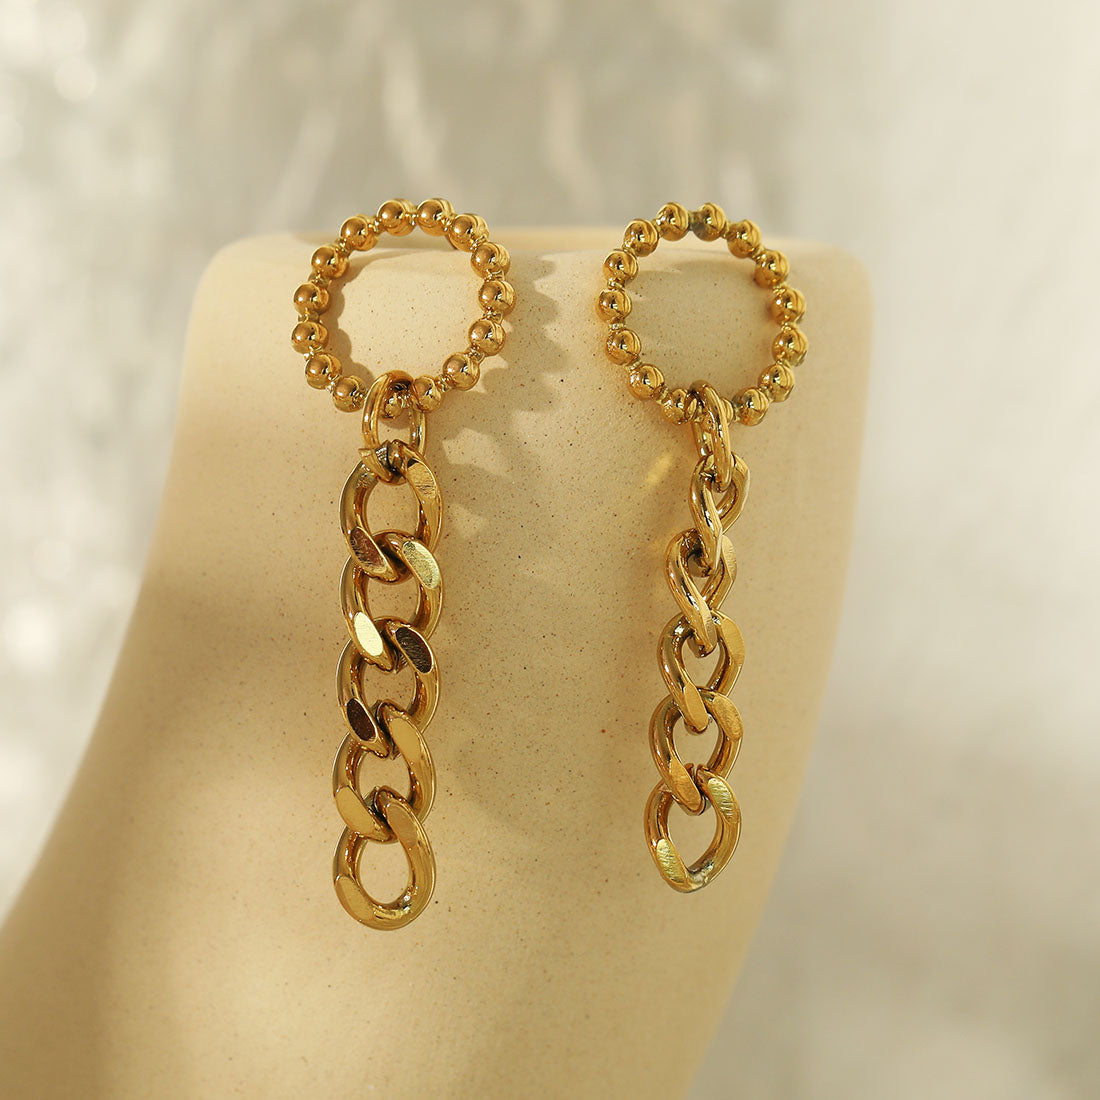 hackney_nine | hackneynine | LUCY21043_earrings | drop_earrings | affordable_jewelry | dainty_jewelry | stainless_steel_jewelry | 18K_gold_jewelry | gold_dipped_jewelry | gold-jewelry